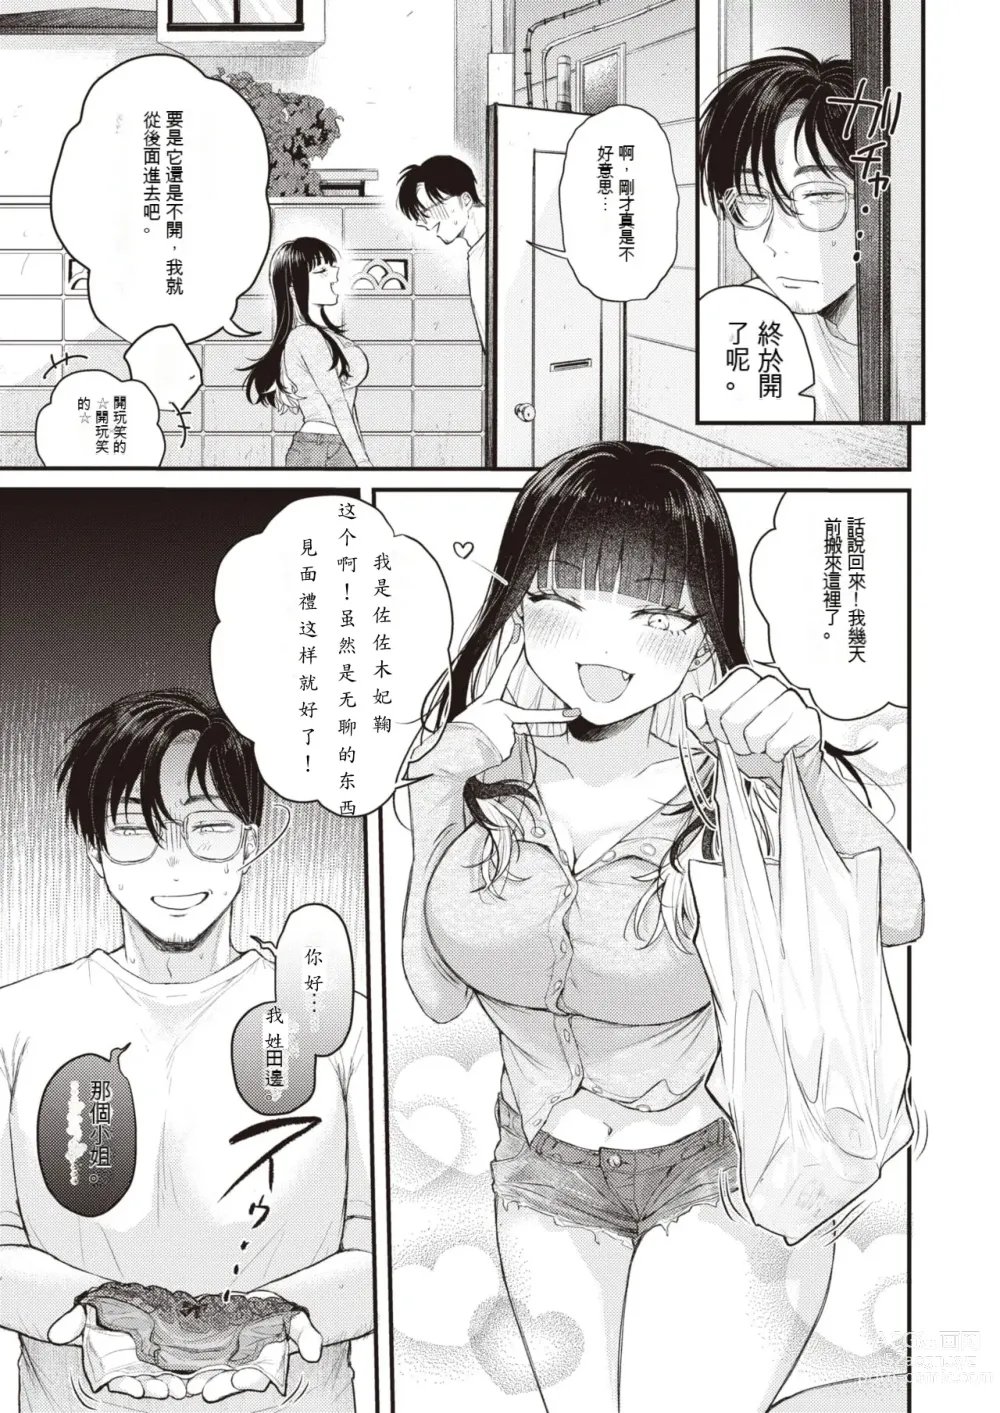 Page 3 of manga Beranda Goshi no Shoka